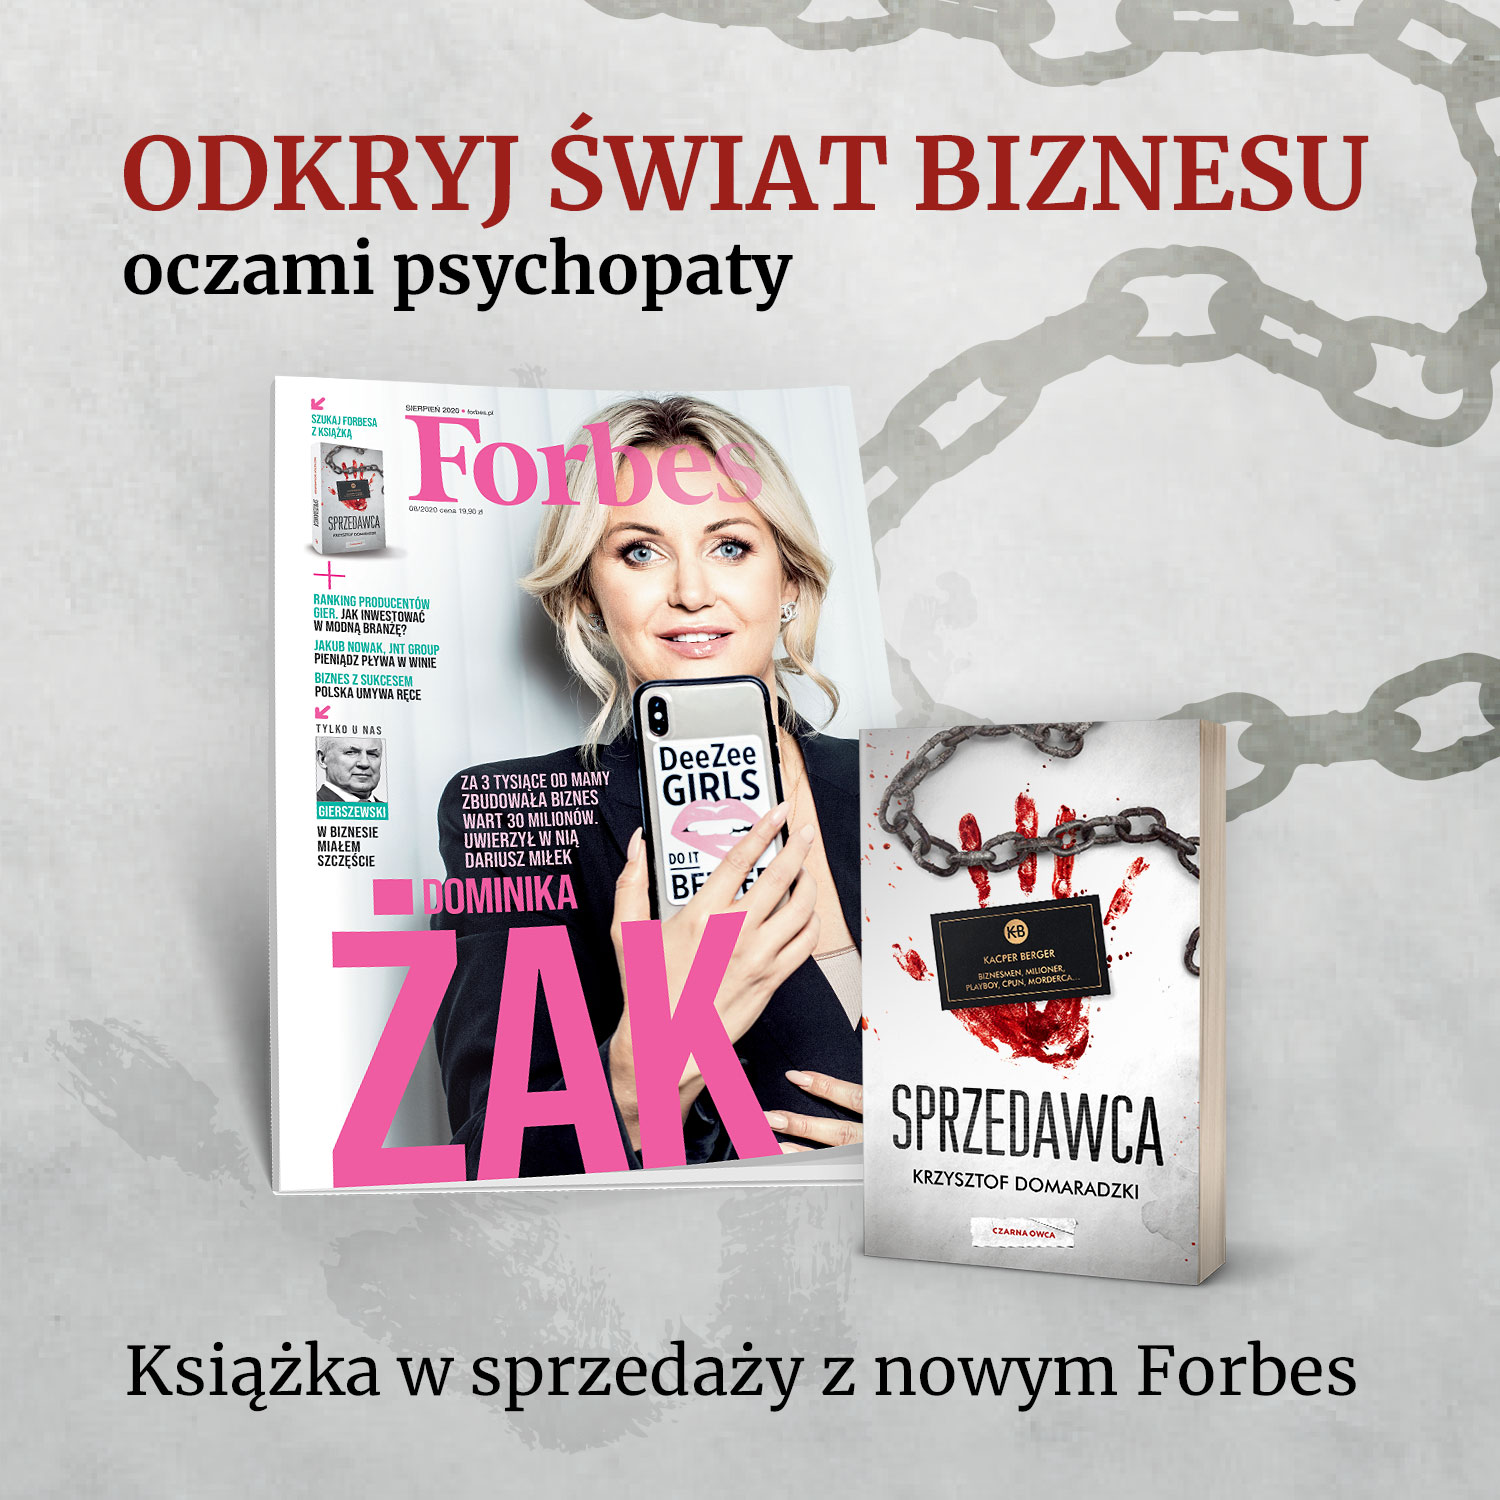 Książka „Sprzedawca” Krzysztofa Domaradzkiego w sprzedaży z najnowszym numerem magazynu Forbes